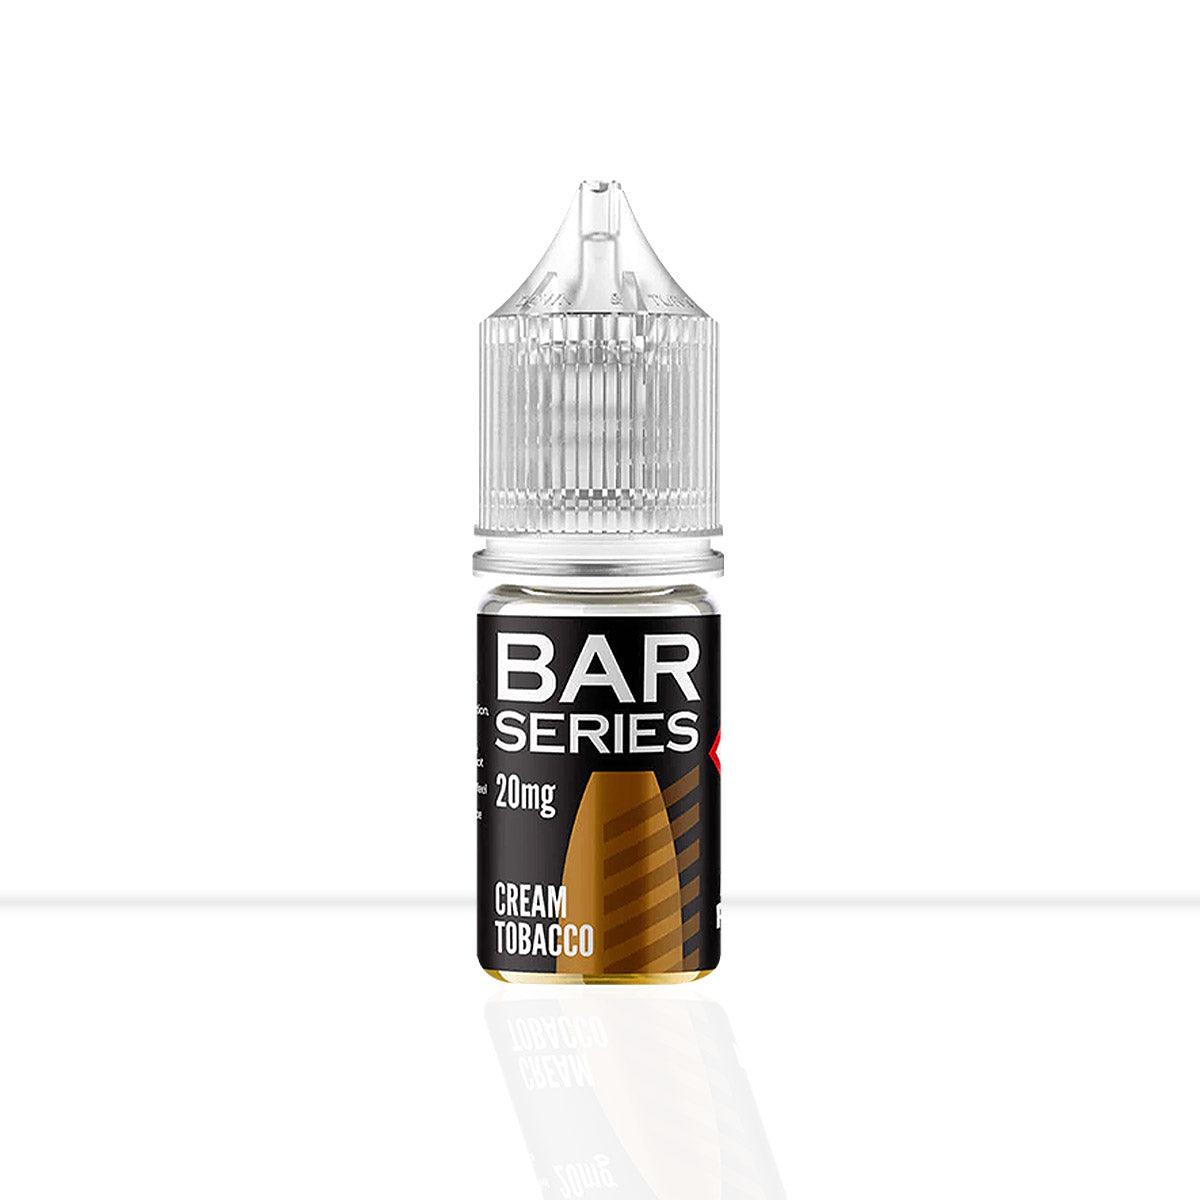 Creamy Tobacco Nic Salt E-liquid Bar Series - Creamy Tobacco Nic Salt E-liquid Bar Series - E Liquid